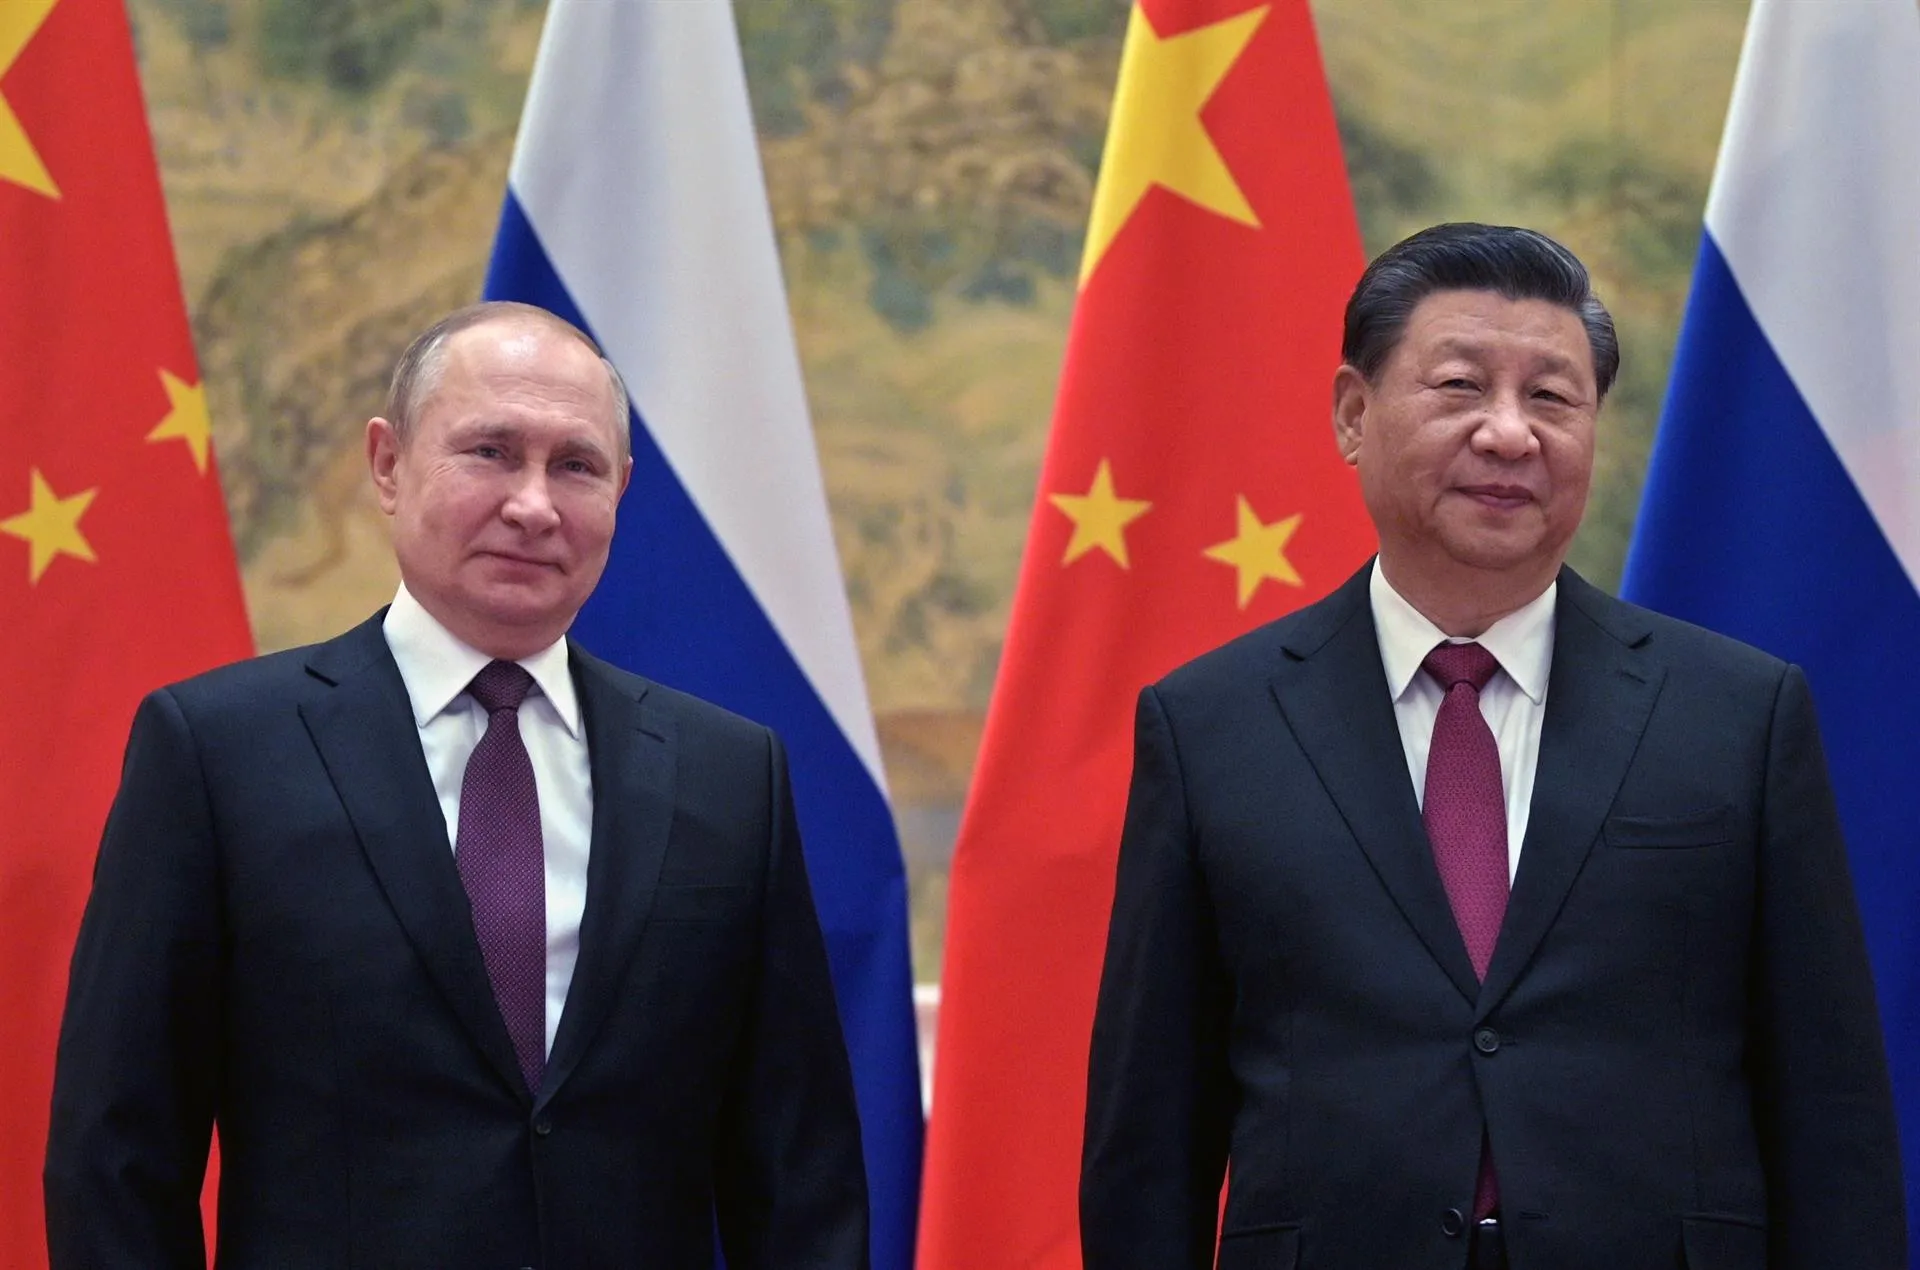 La peligrosa transición: De la hegemonía de EEUU (Occidente) a la de China (Oriente)*